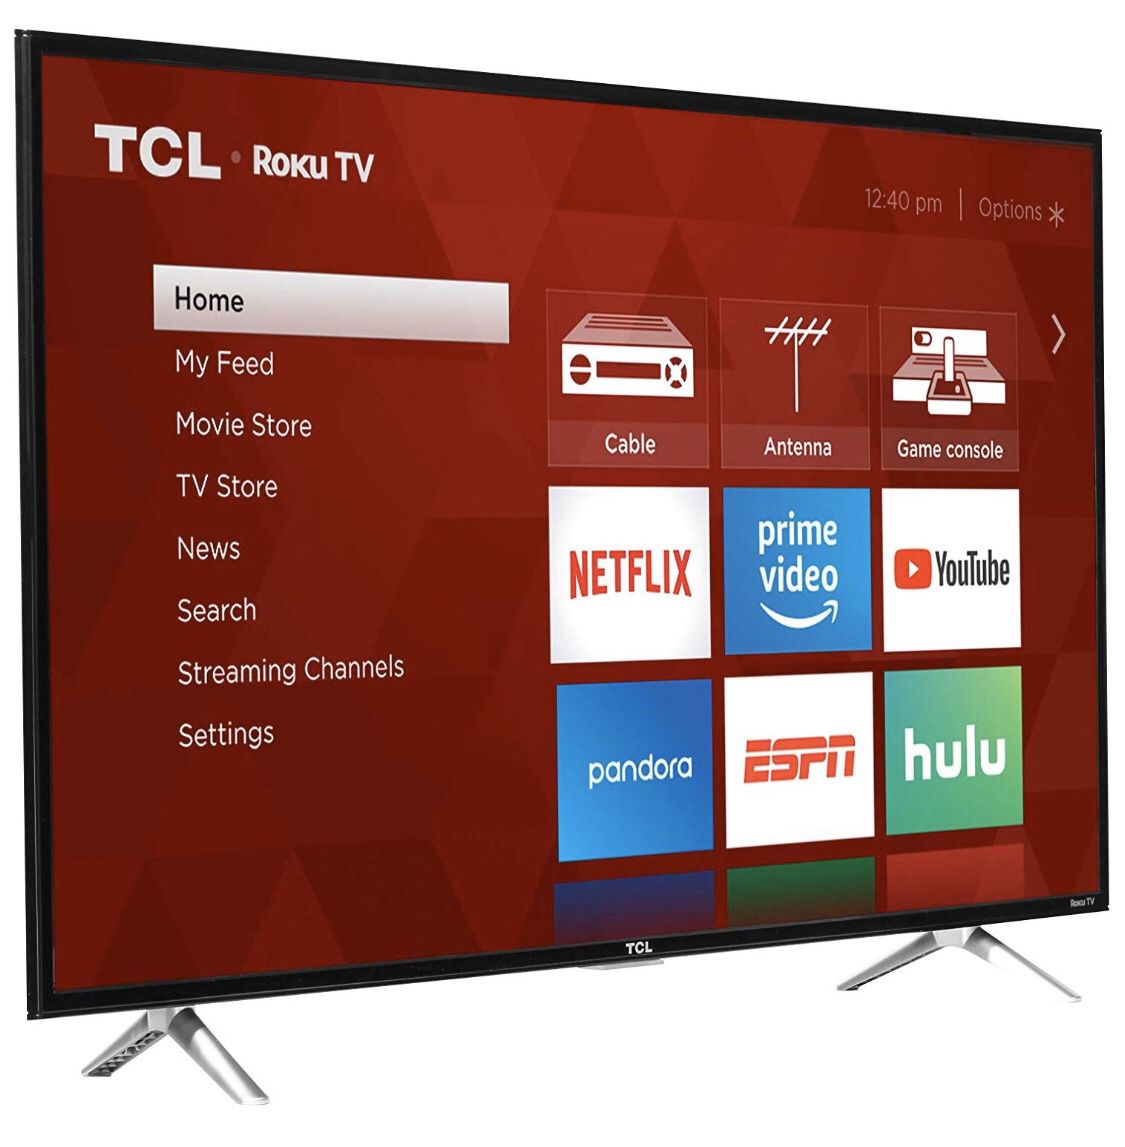 Smart TV (Roku TCL 32”) 720